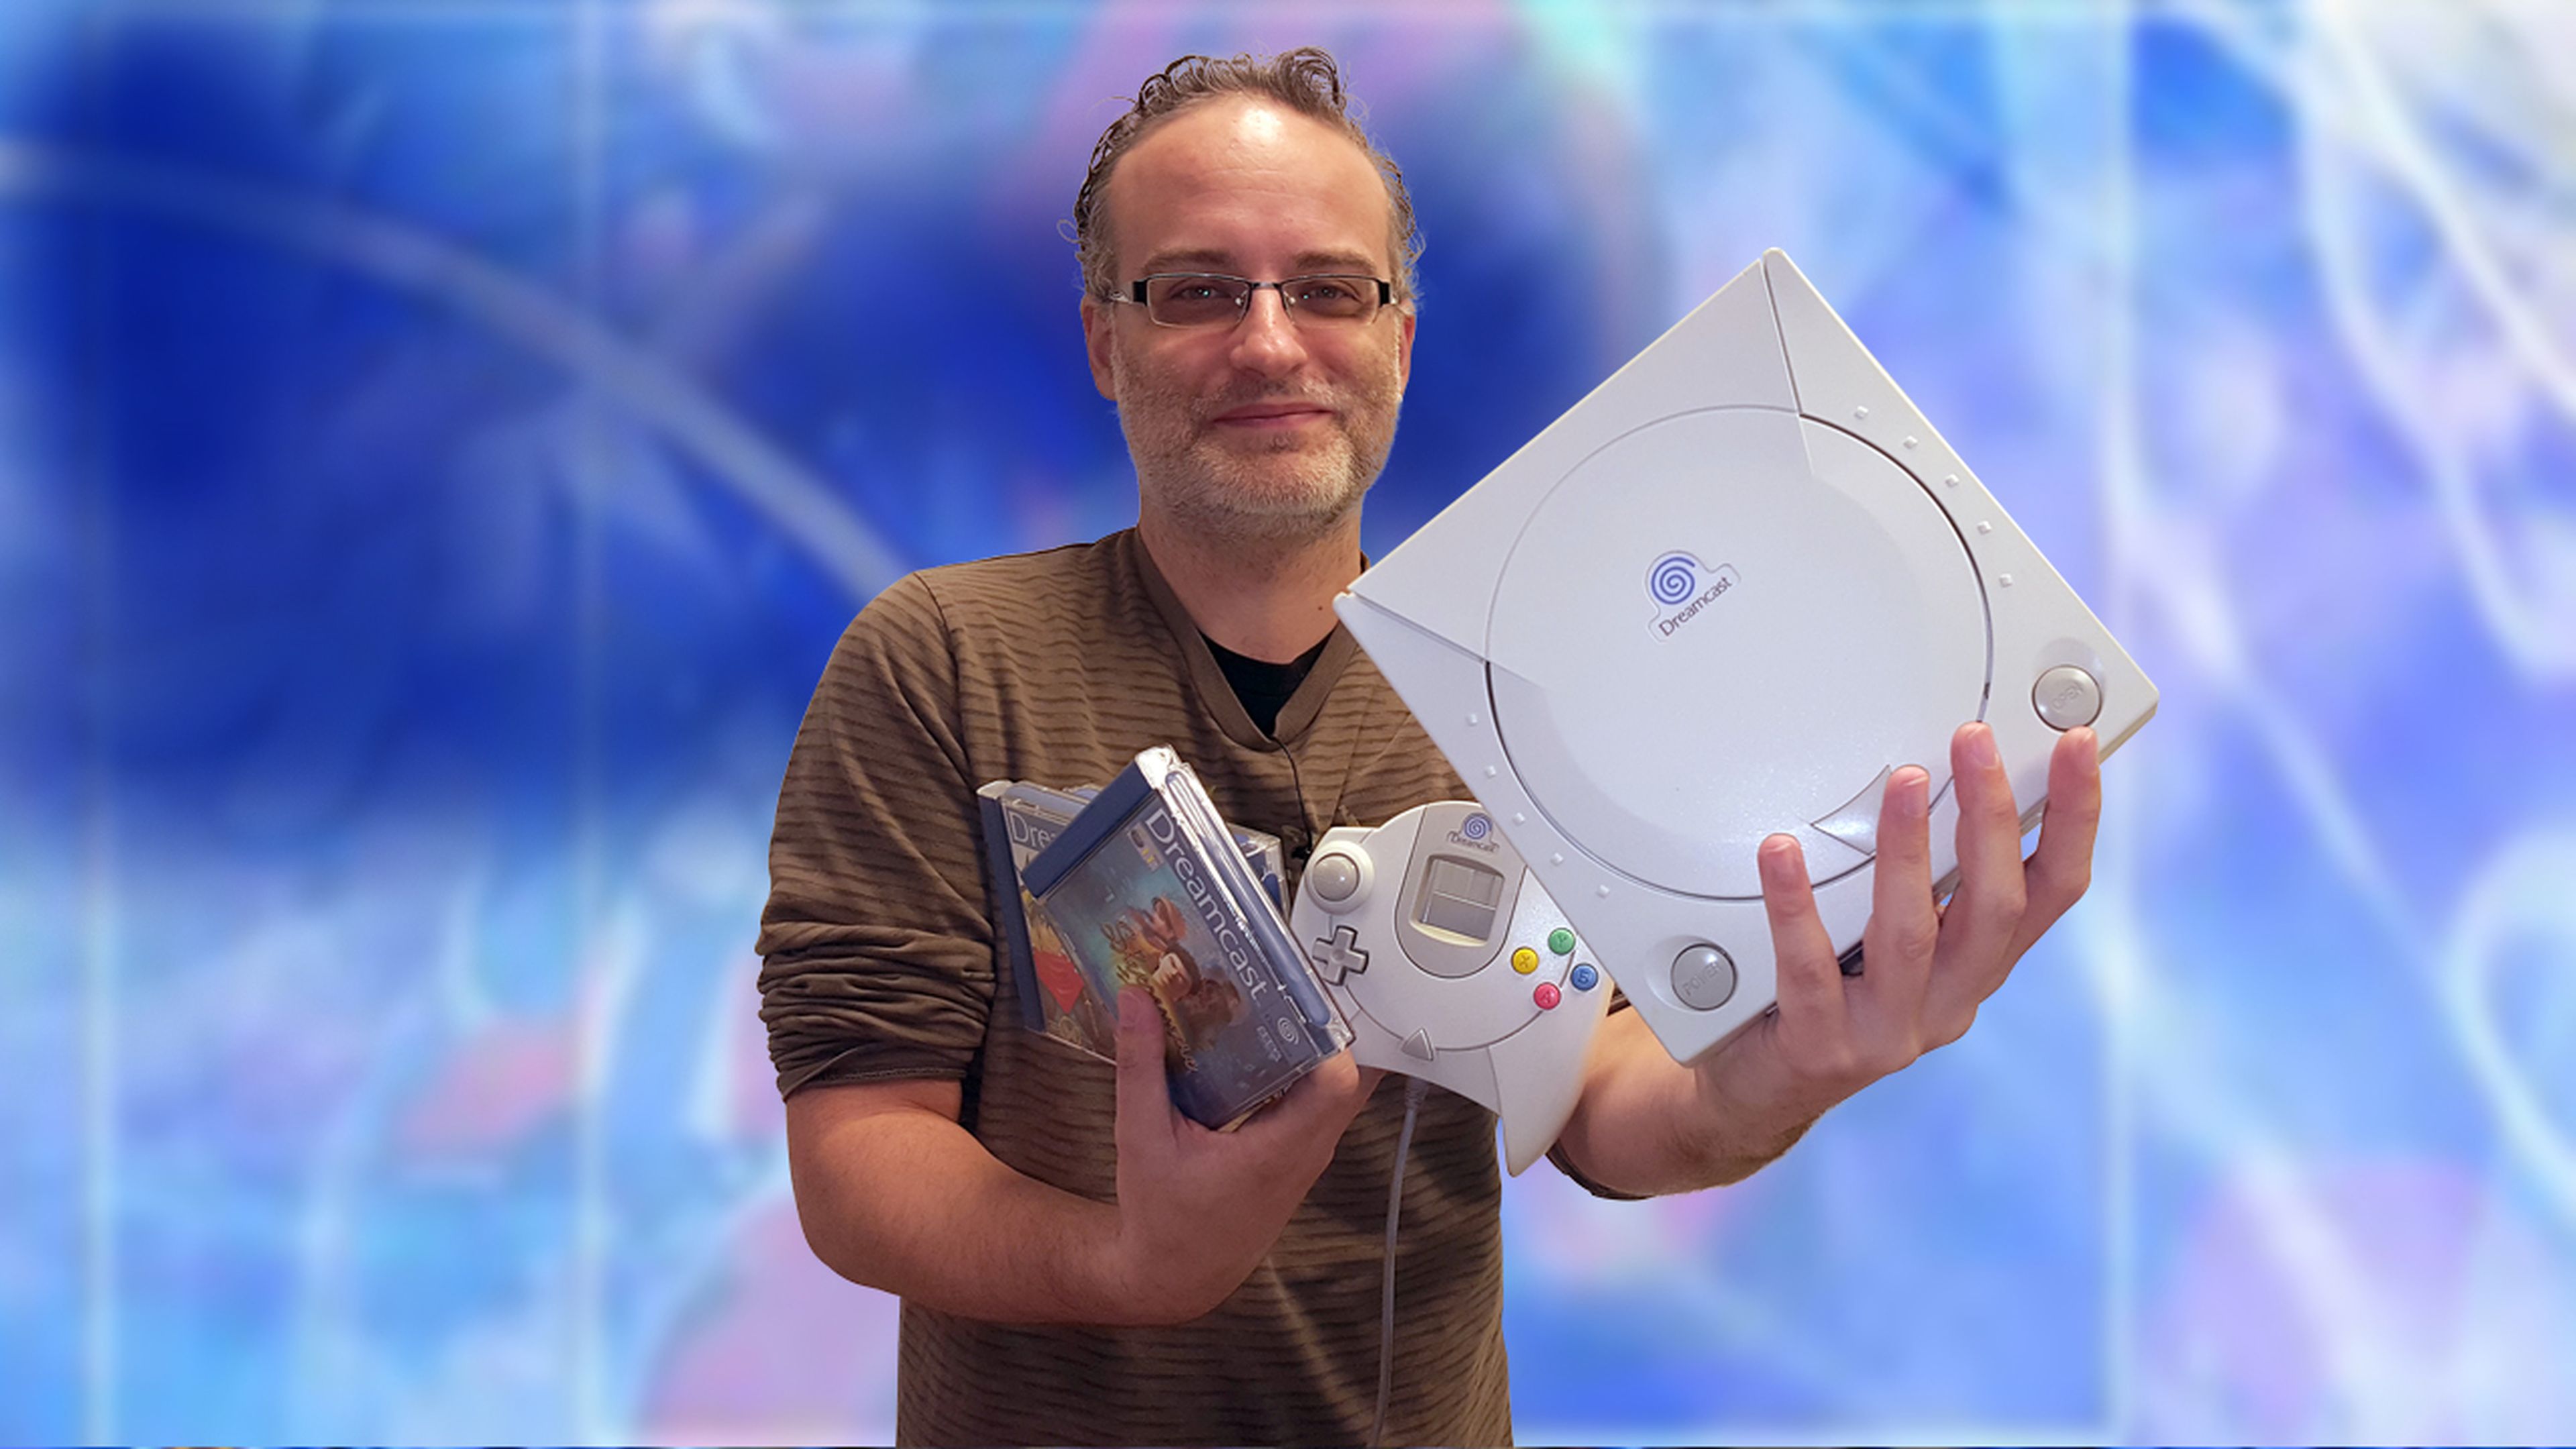 Unboxing y curiosidades de Dreamcast - La OdiSEGA ep. 8